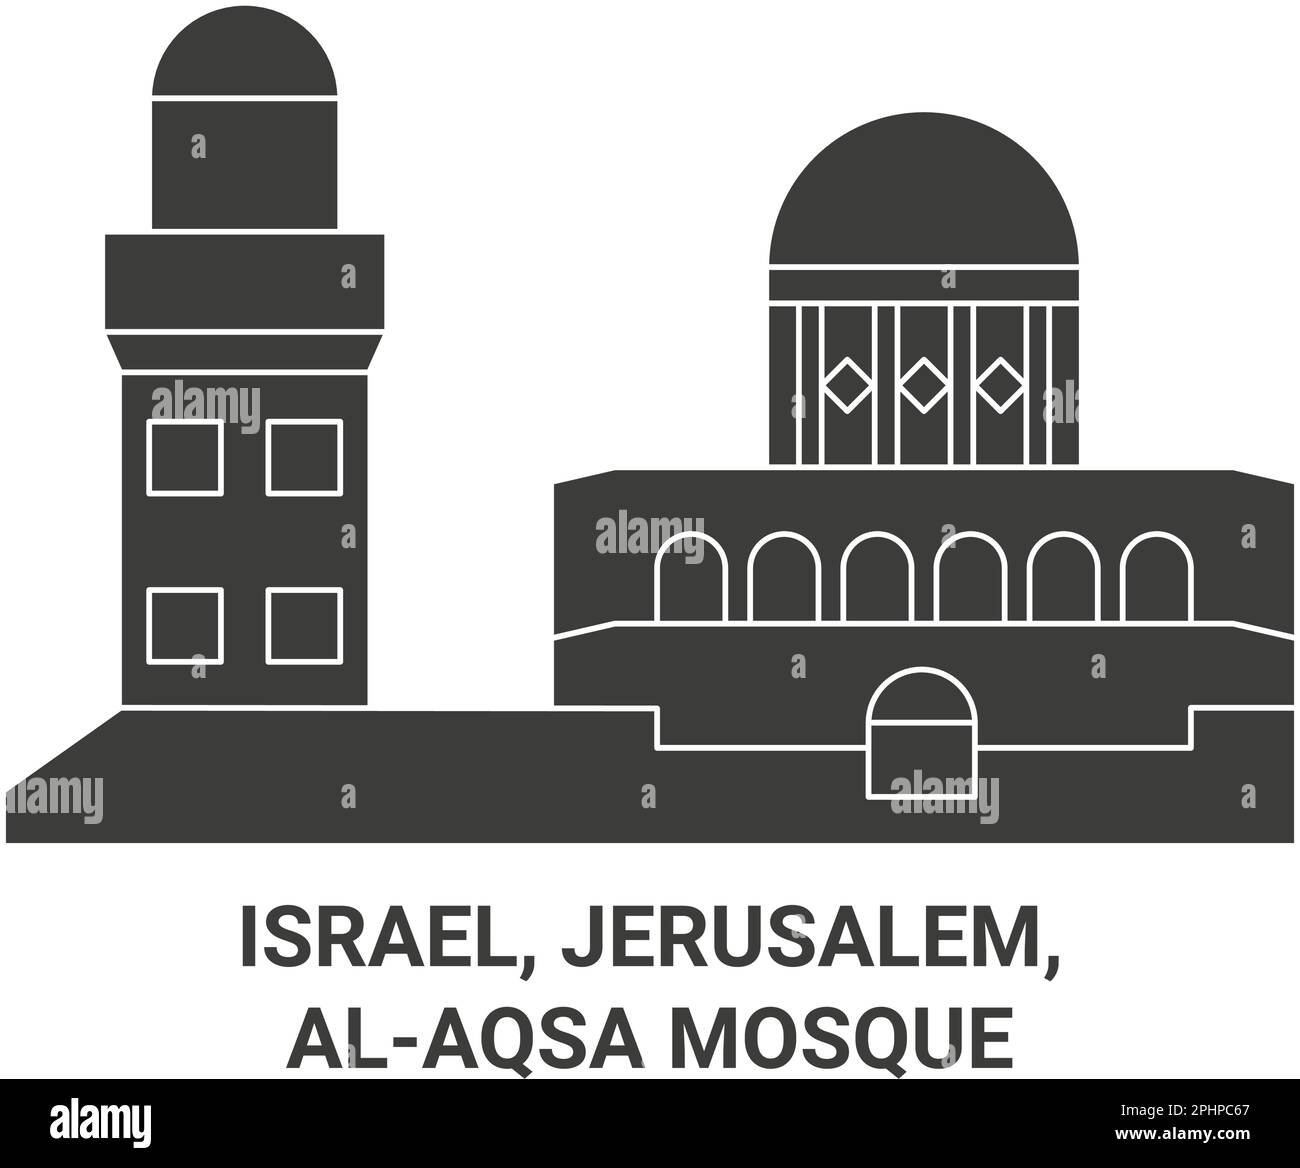 Israel, Jerusalem, Alaqsa Mosque travel landmark vector illustration Stock Vector